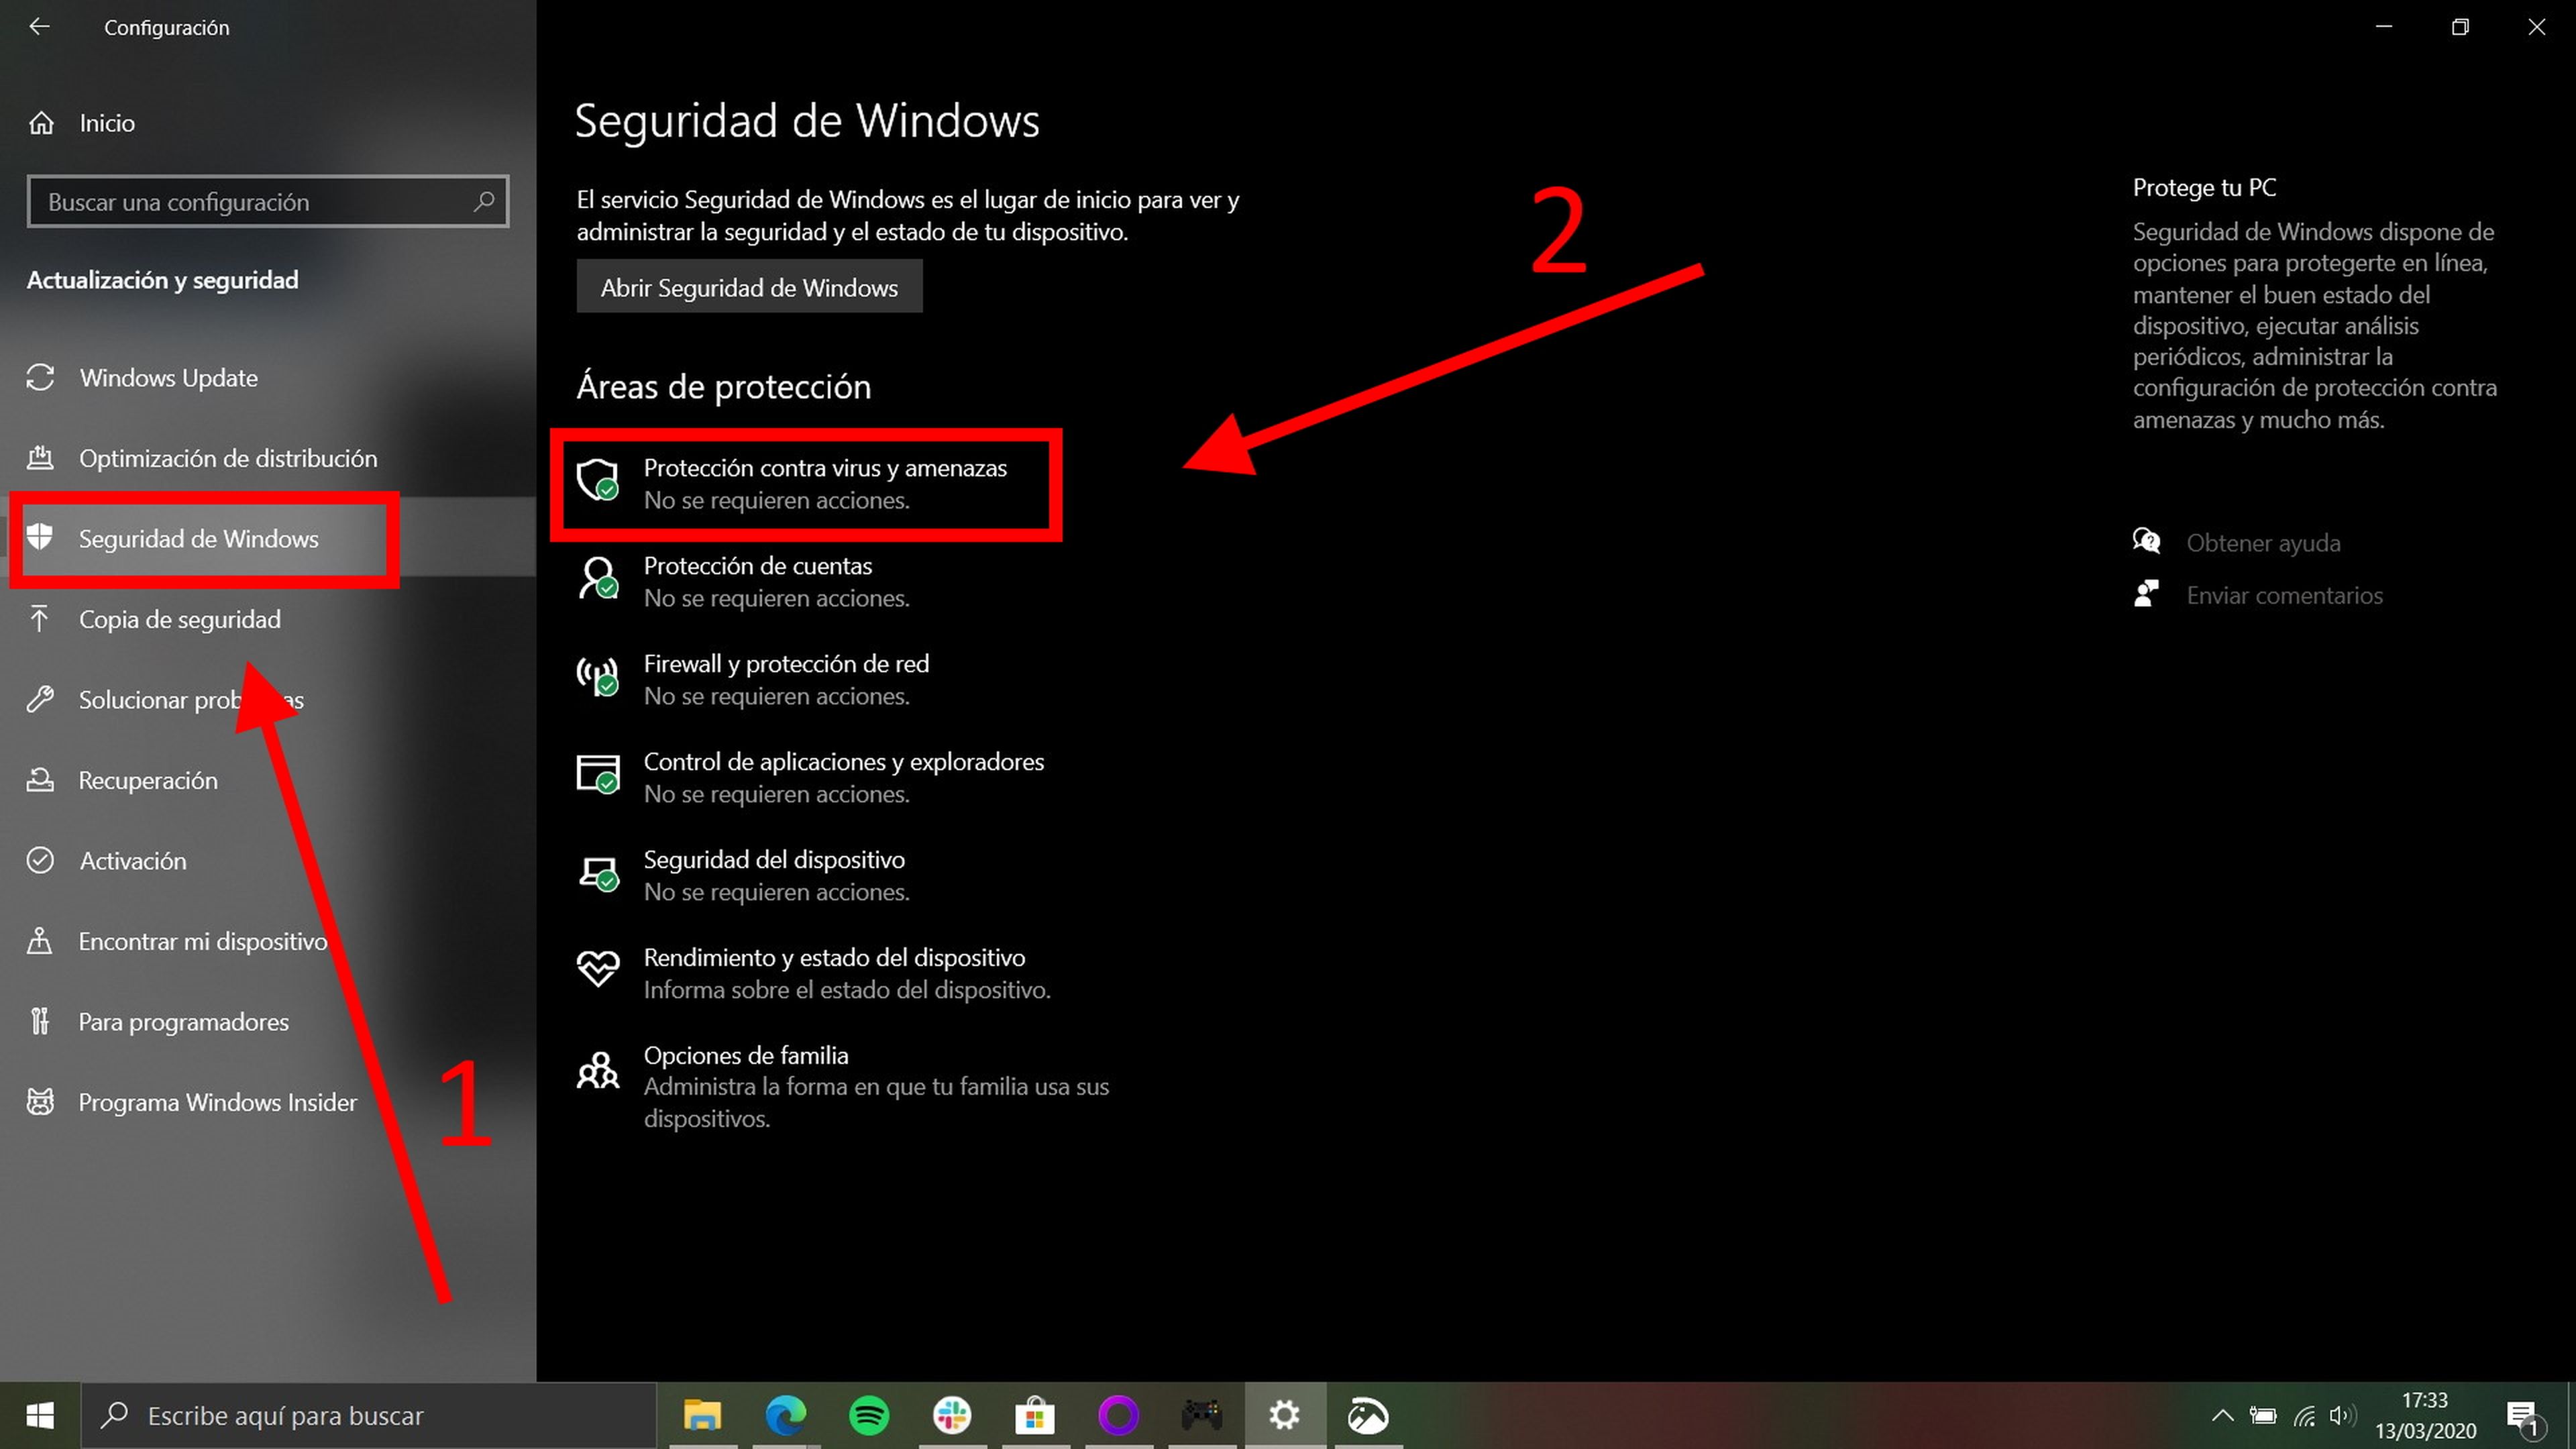 Cómo activar la protección antivirus y contra amenazas en Windows 10